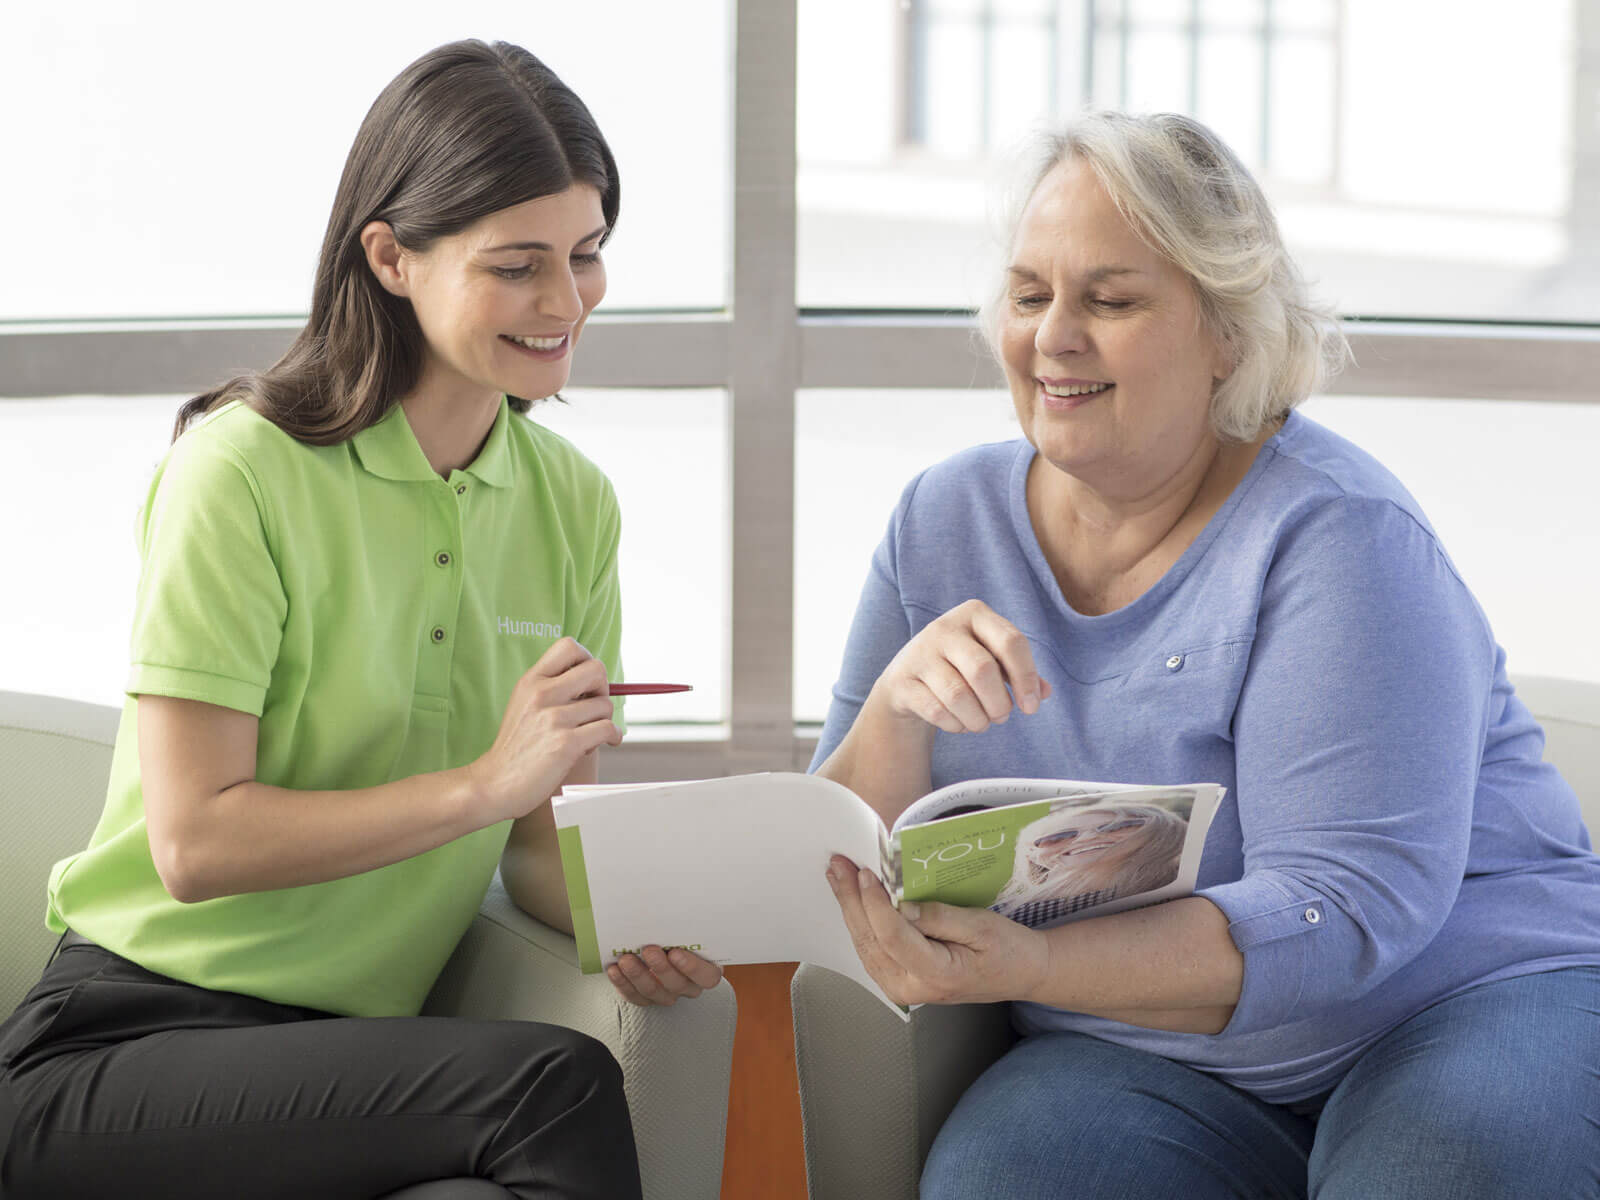 Un empleado de Humana ayuda a una mujer a entender los planes de seguro médico detallados en un folleto.